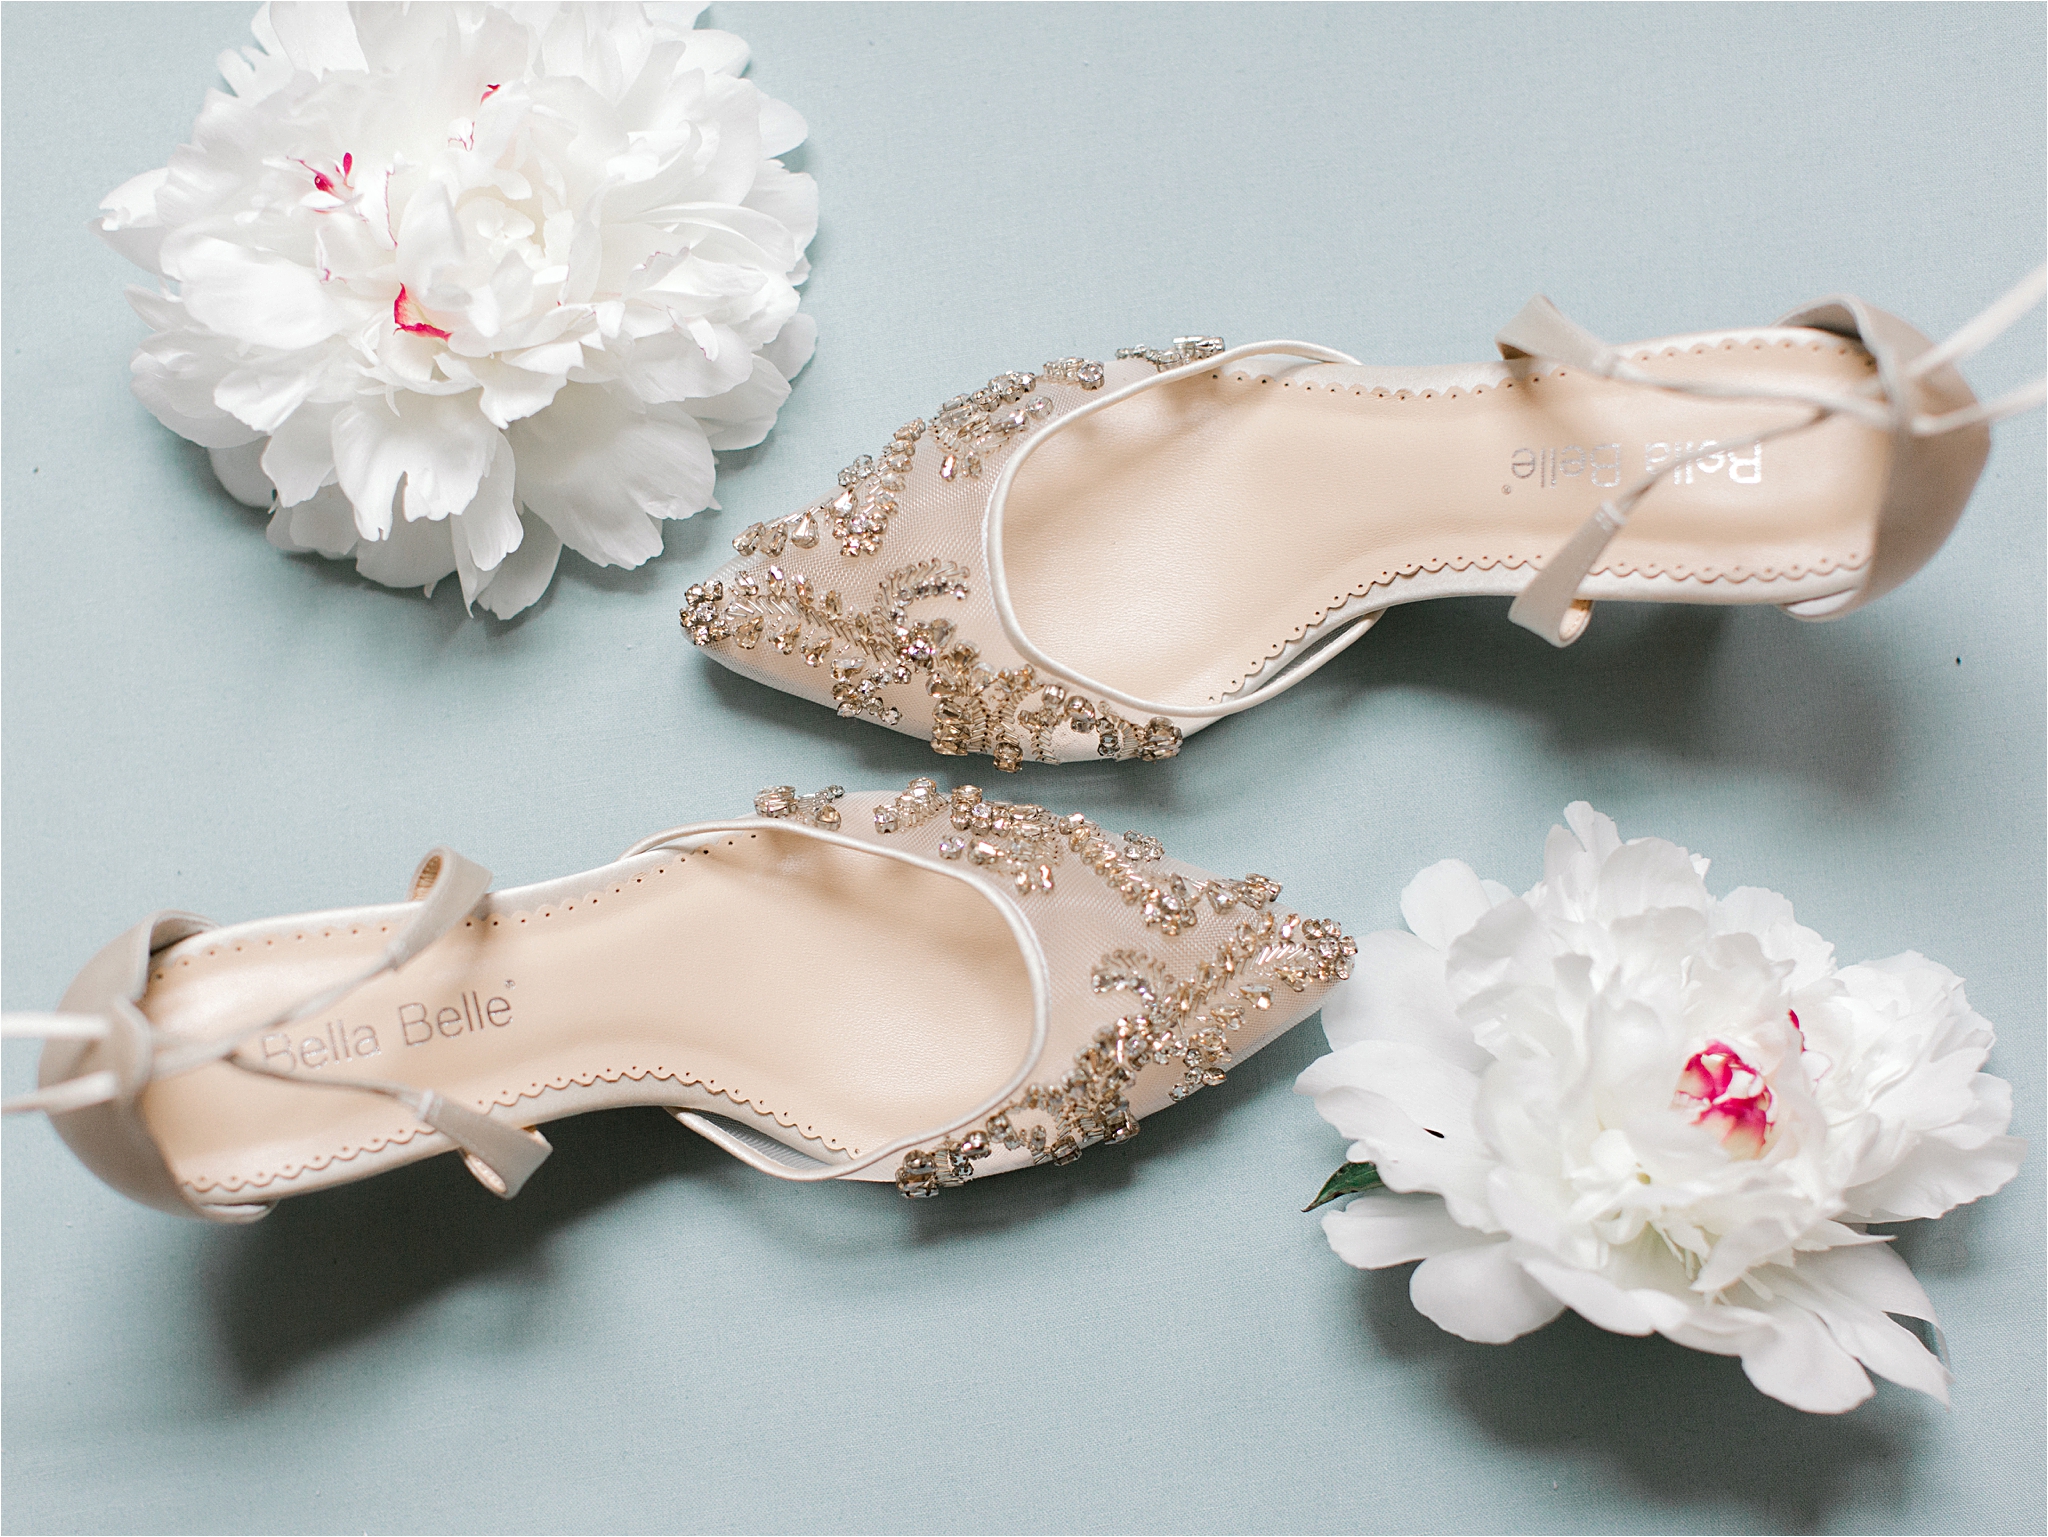 bella belle gold shoes for cleveland wedding